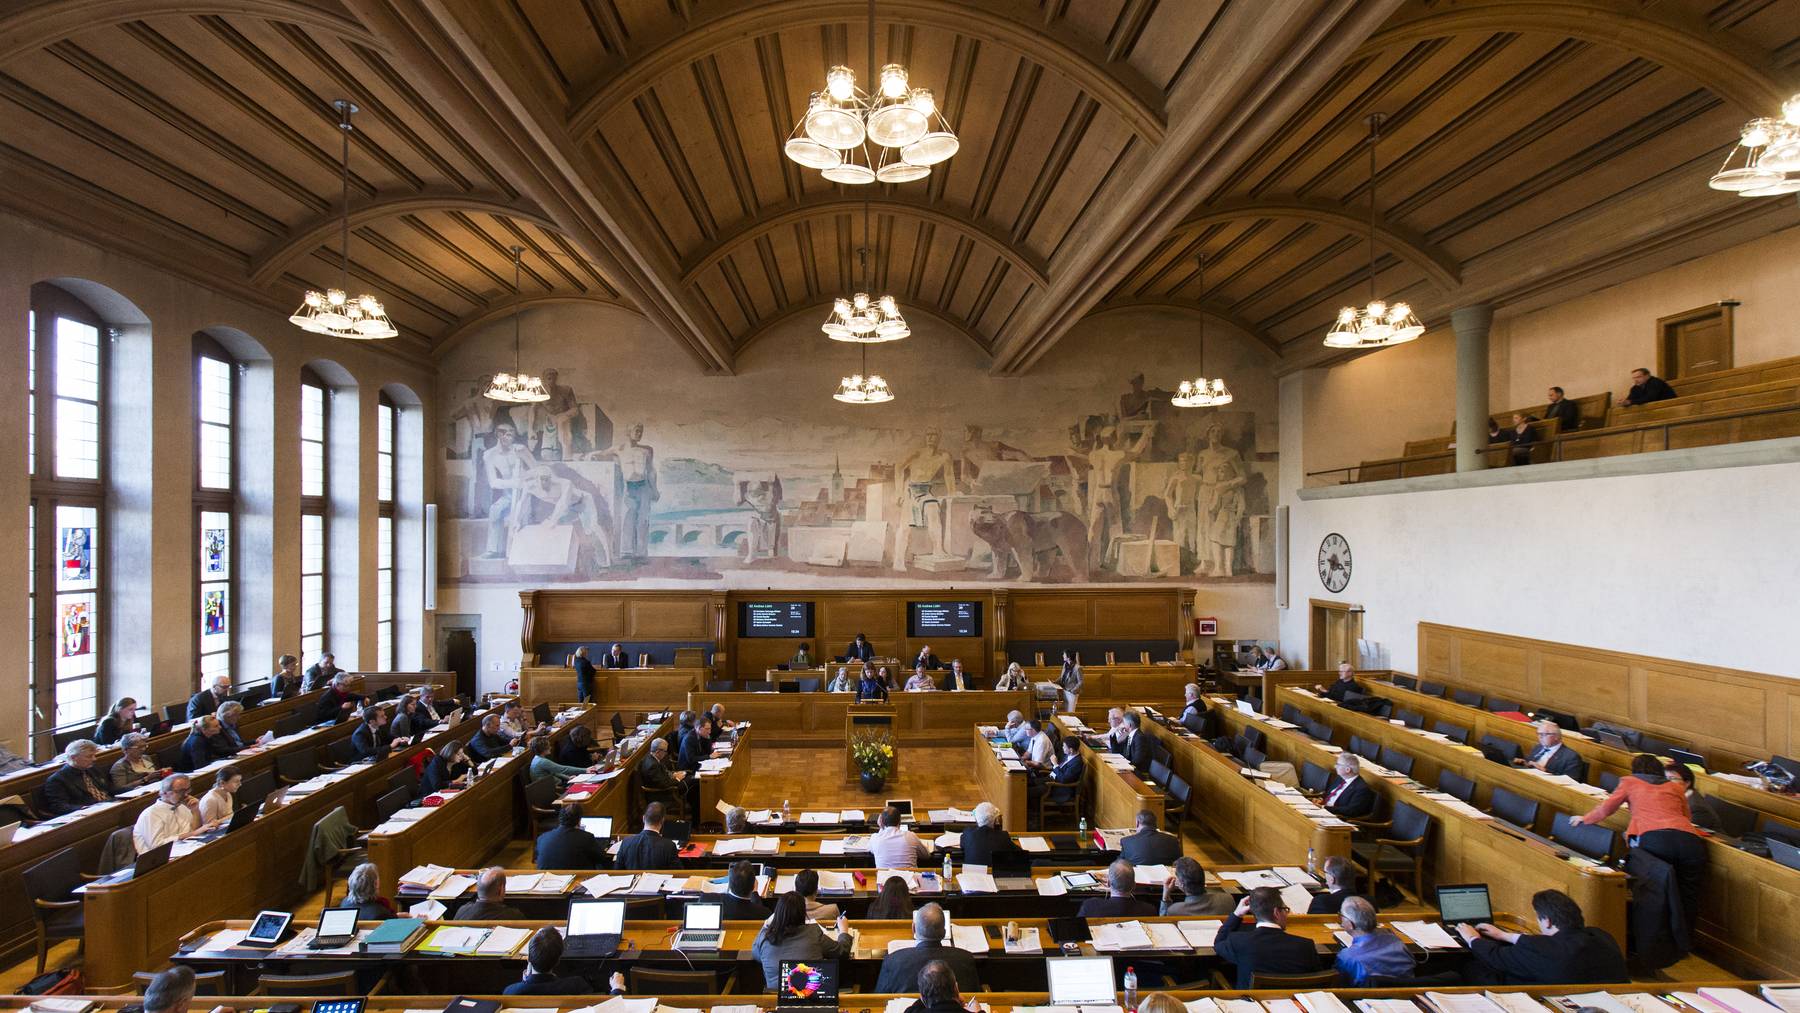 Das Gesetz führte teilweise zu massiven Erhöhung der Kostenbeteiligung von unterhaltspflichtigen Personen. Das Kantonsparlament will die Gesetzgebung nun korrigieren.